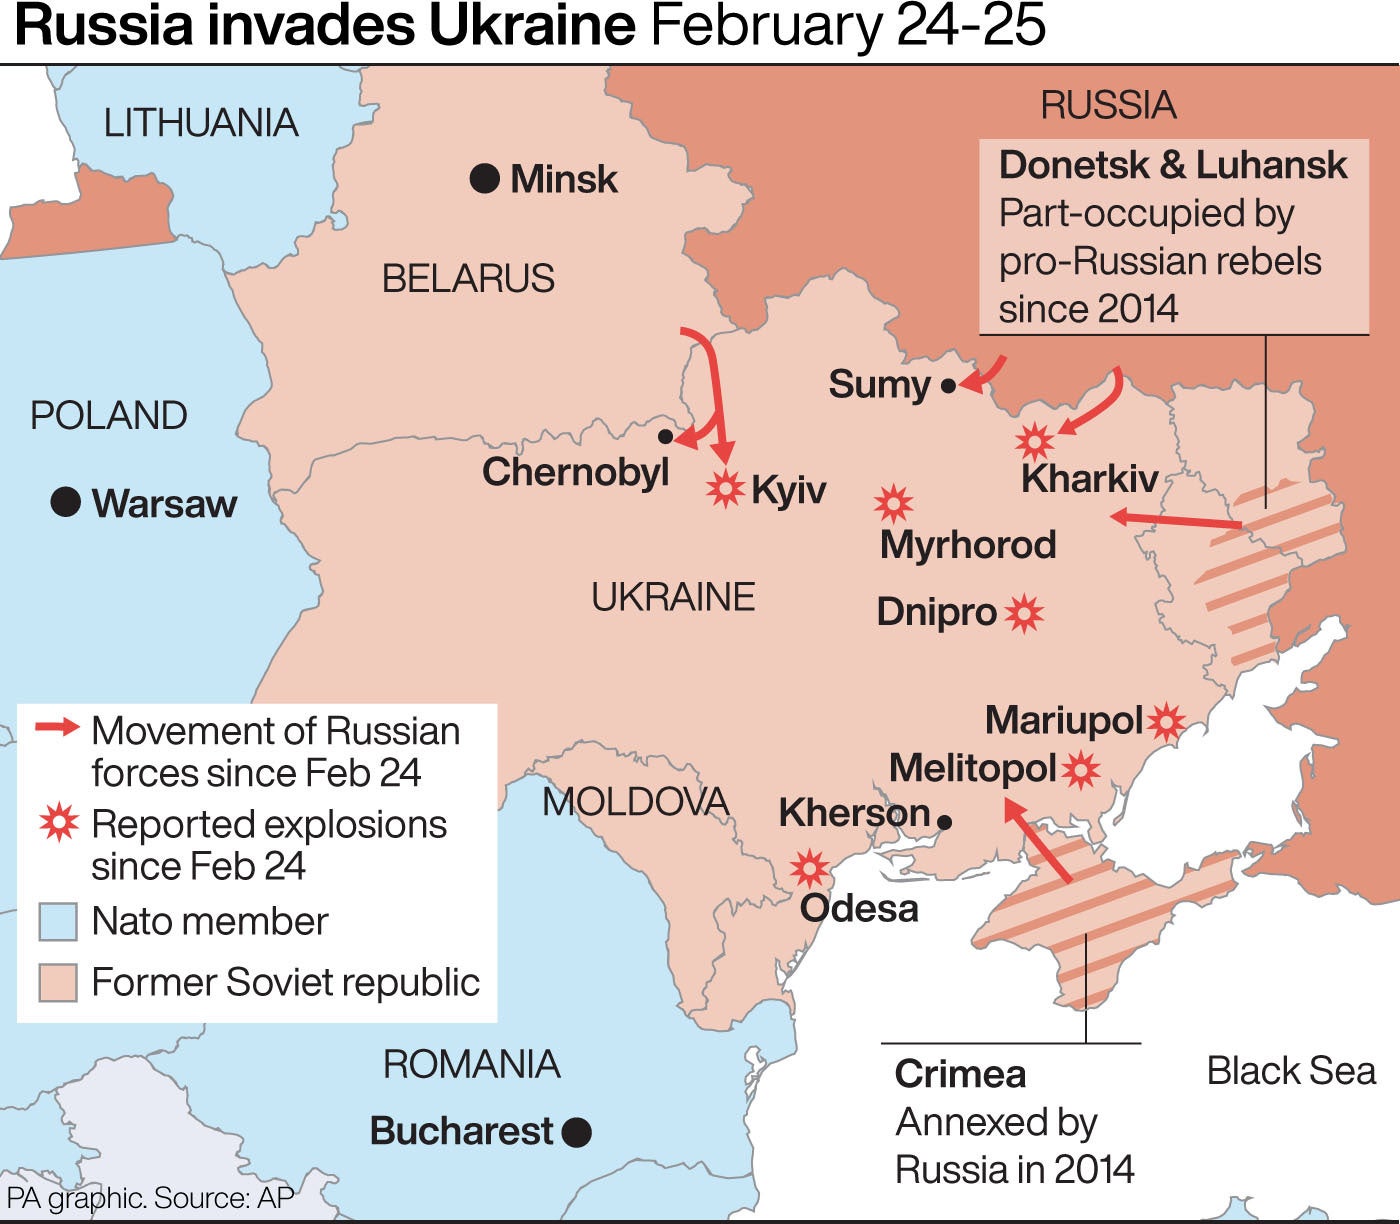 Los movimientos de las fuerzas rusas desde que comenzó la invasión